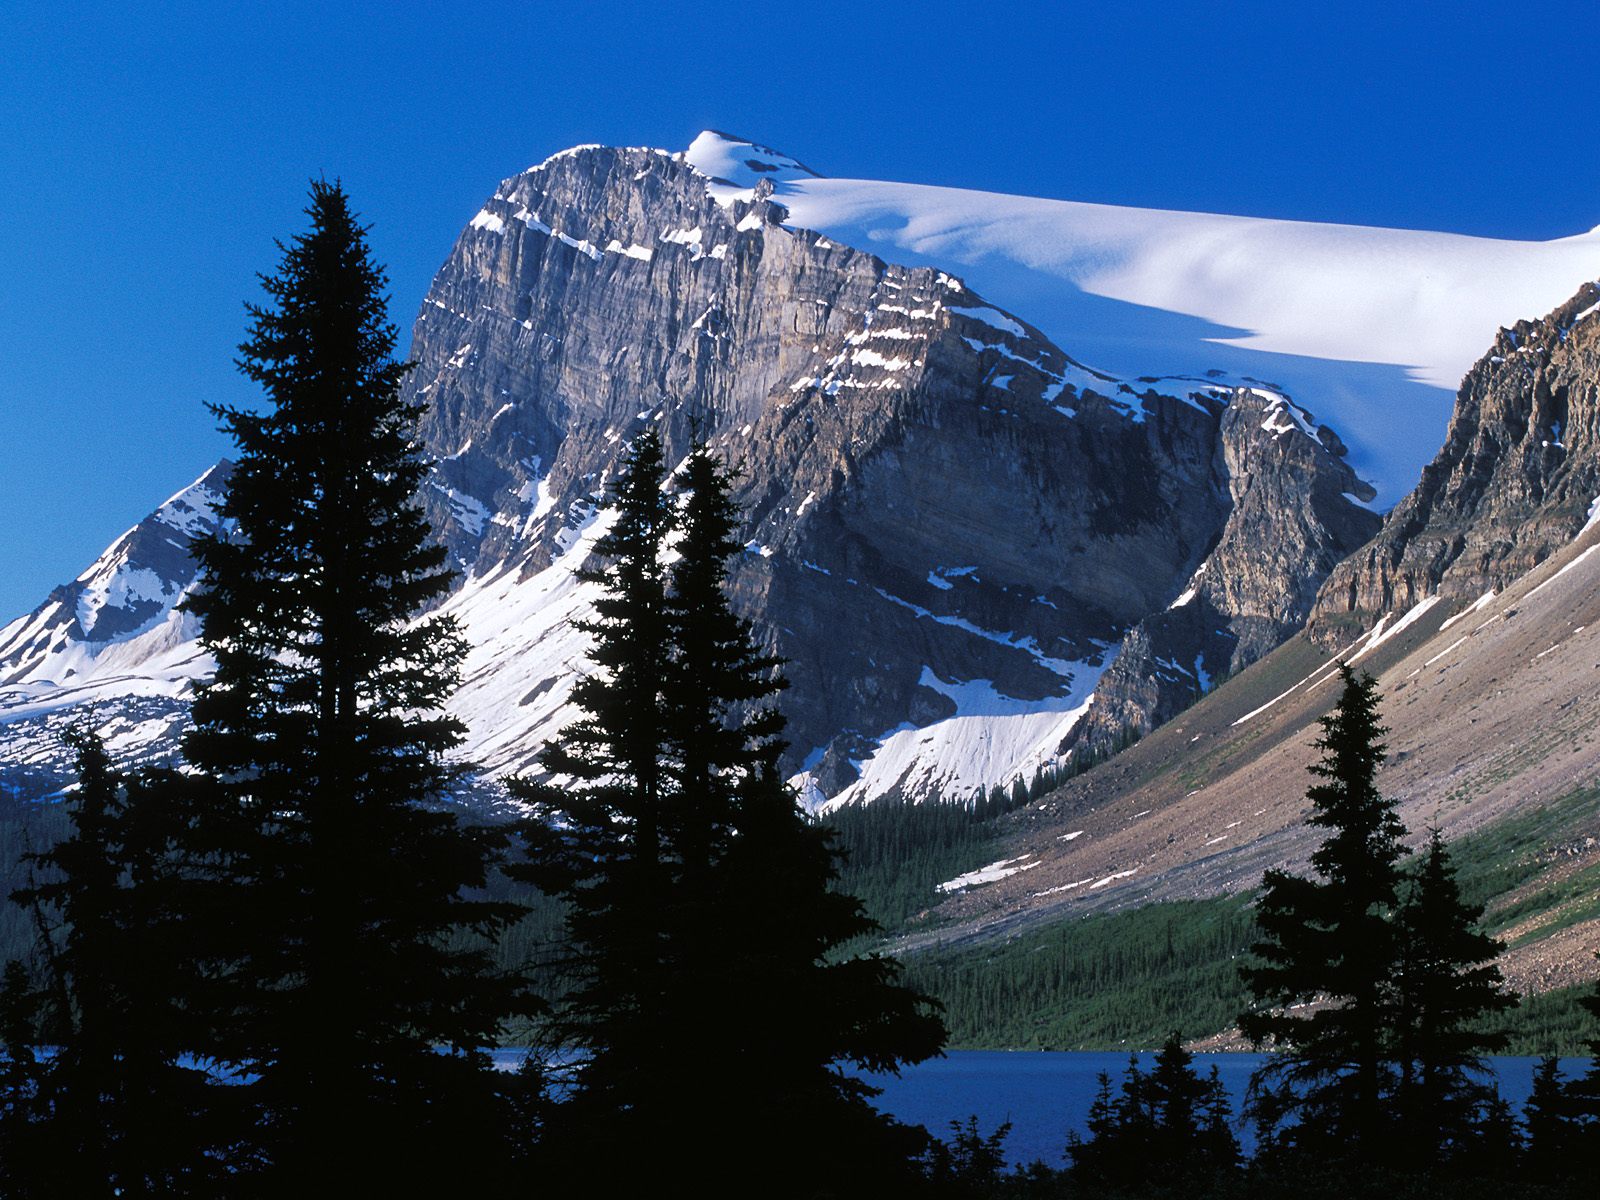  Peak Banff National Park Alberta Canada Wallpaper   HQ Wallpapers 1600x1200